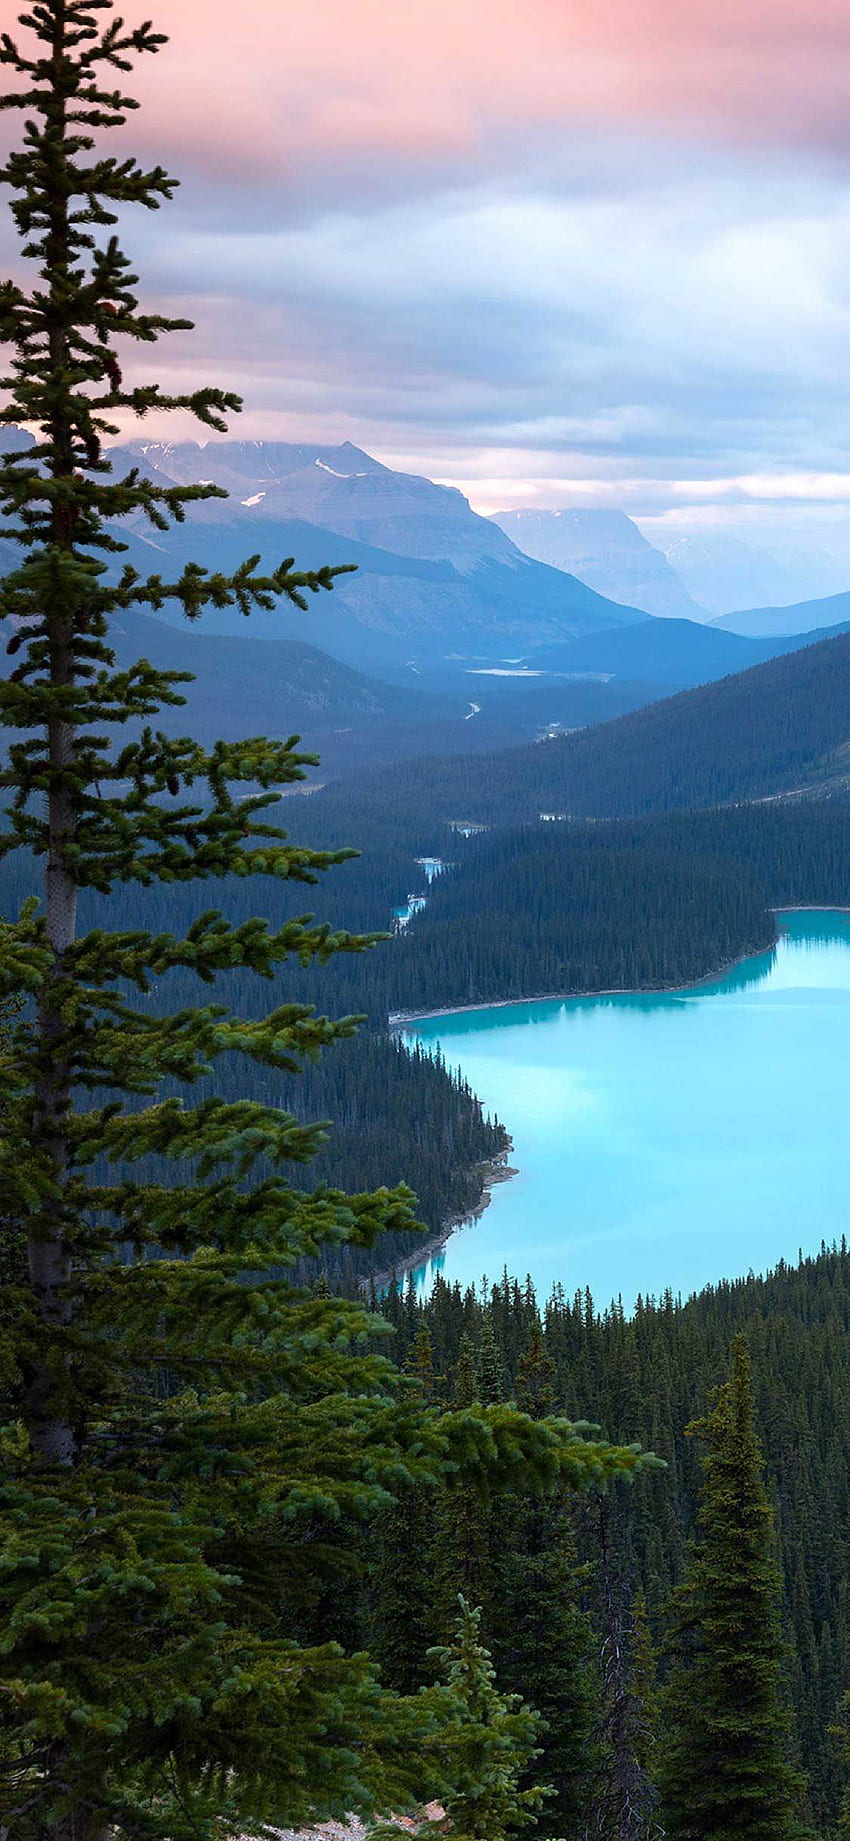 iPhone Pro ペイト湖カナダ山。 自然 iphone , iPhone カナダ, iPhone 旅行, カナダの森 HD電話の壁紙